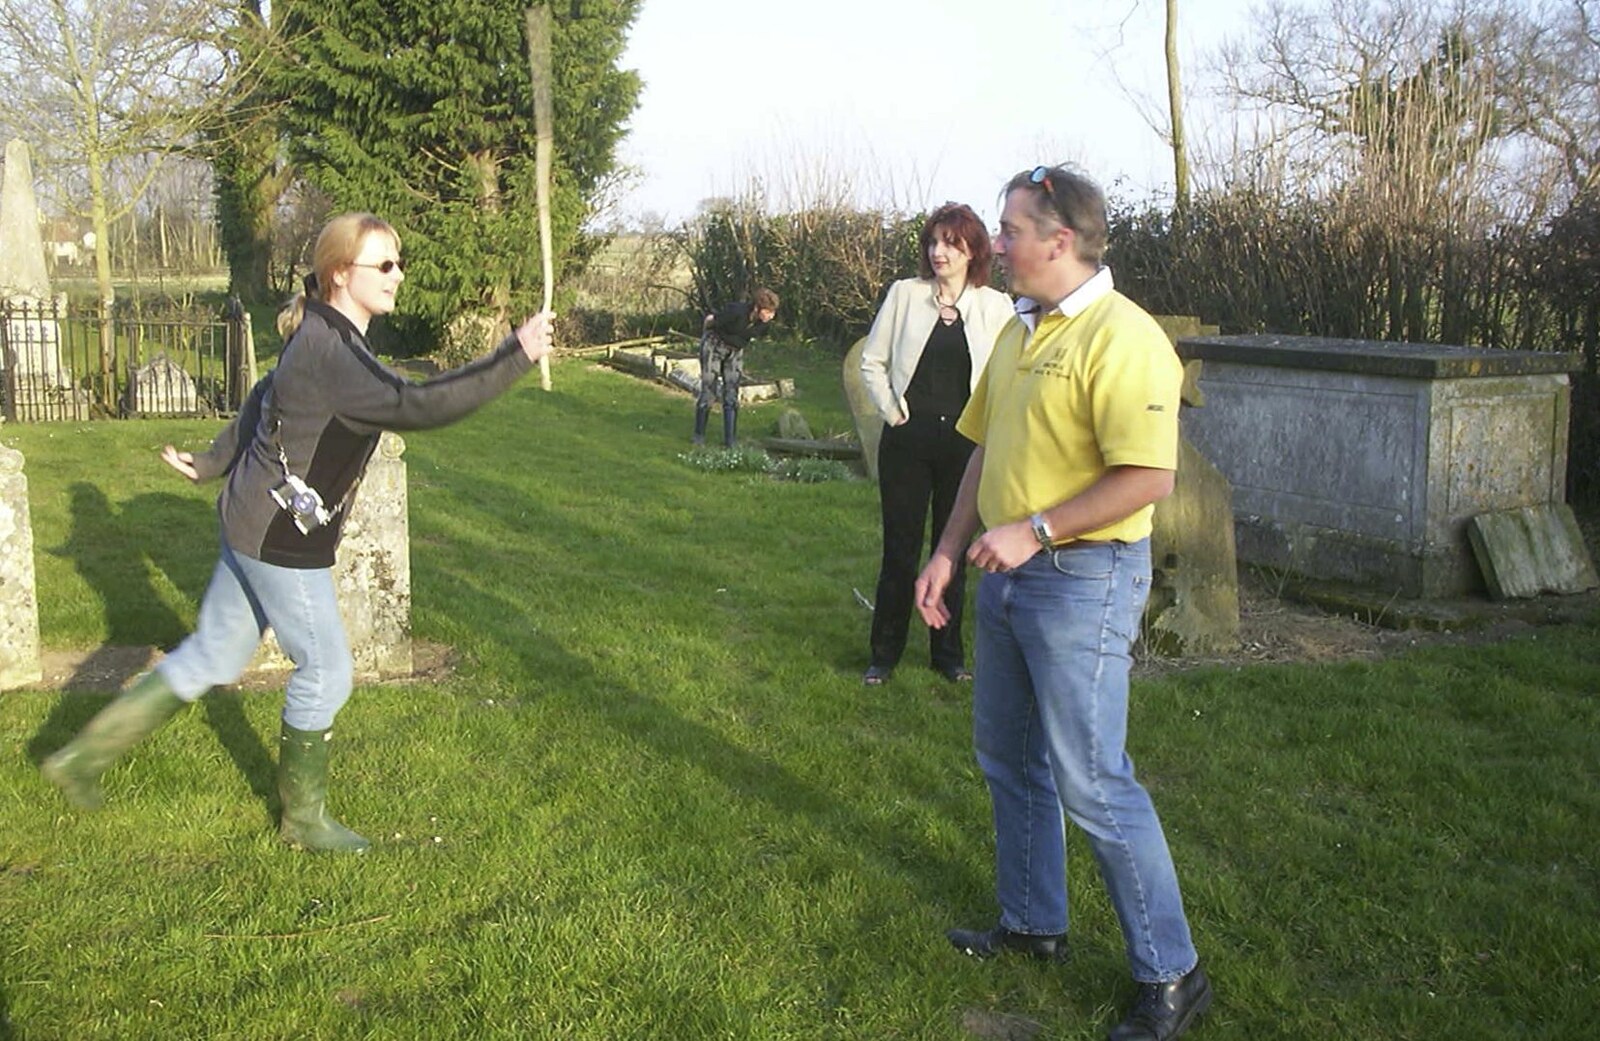 Carolyn on Sunday, Wymondham, Norfolk - 23rd March 2003: Carolyn thrashes Nigel with a stick